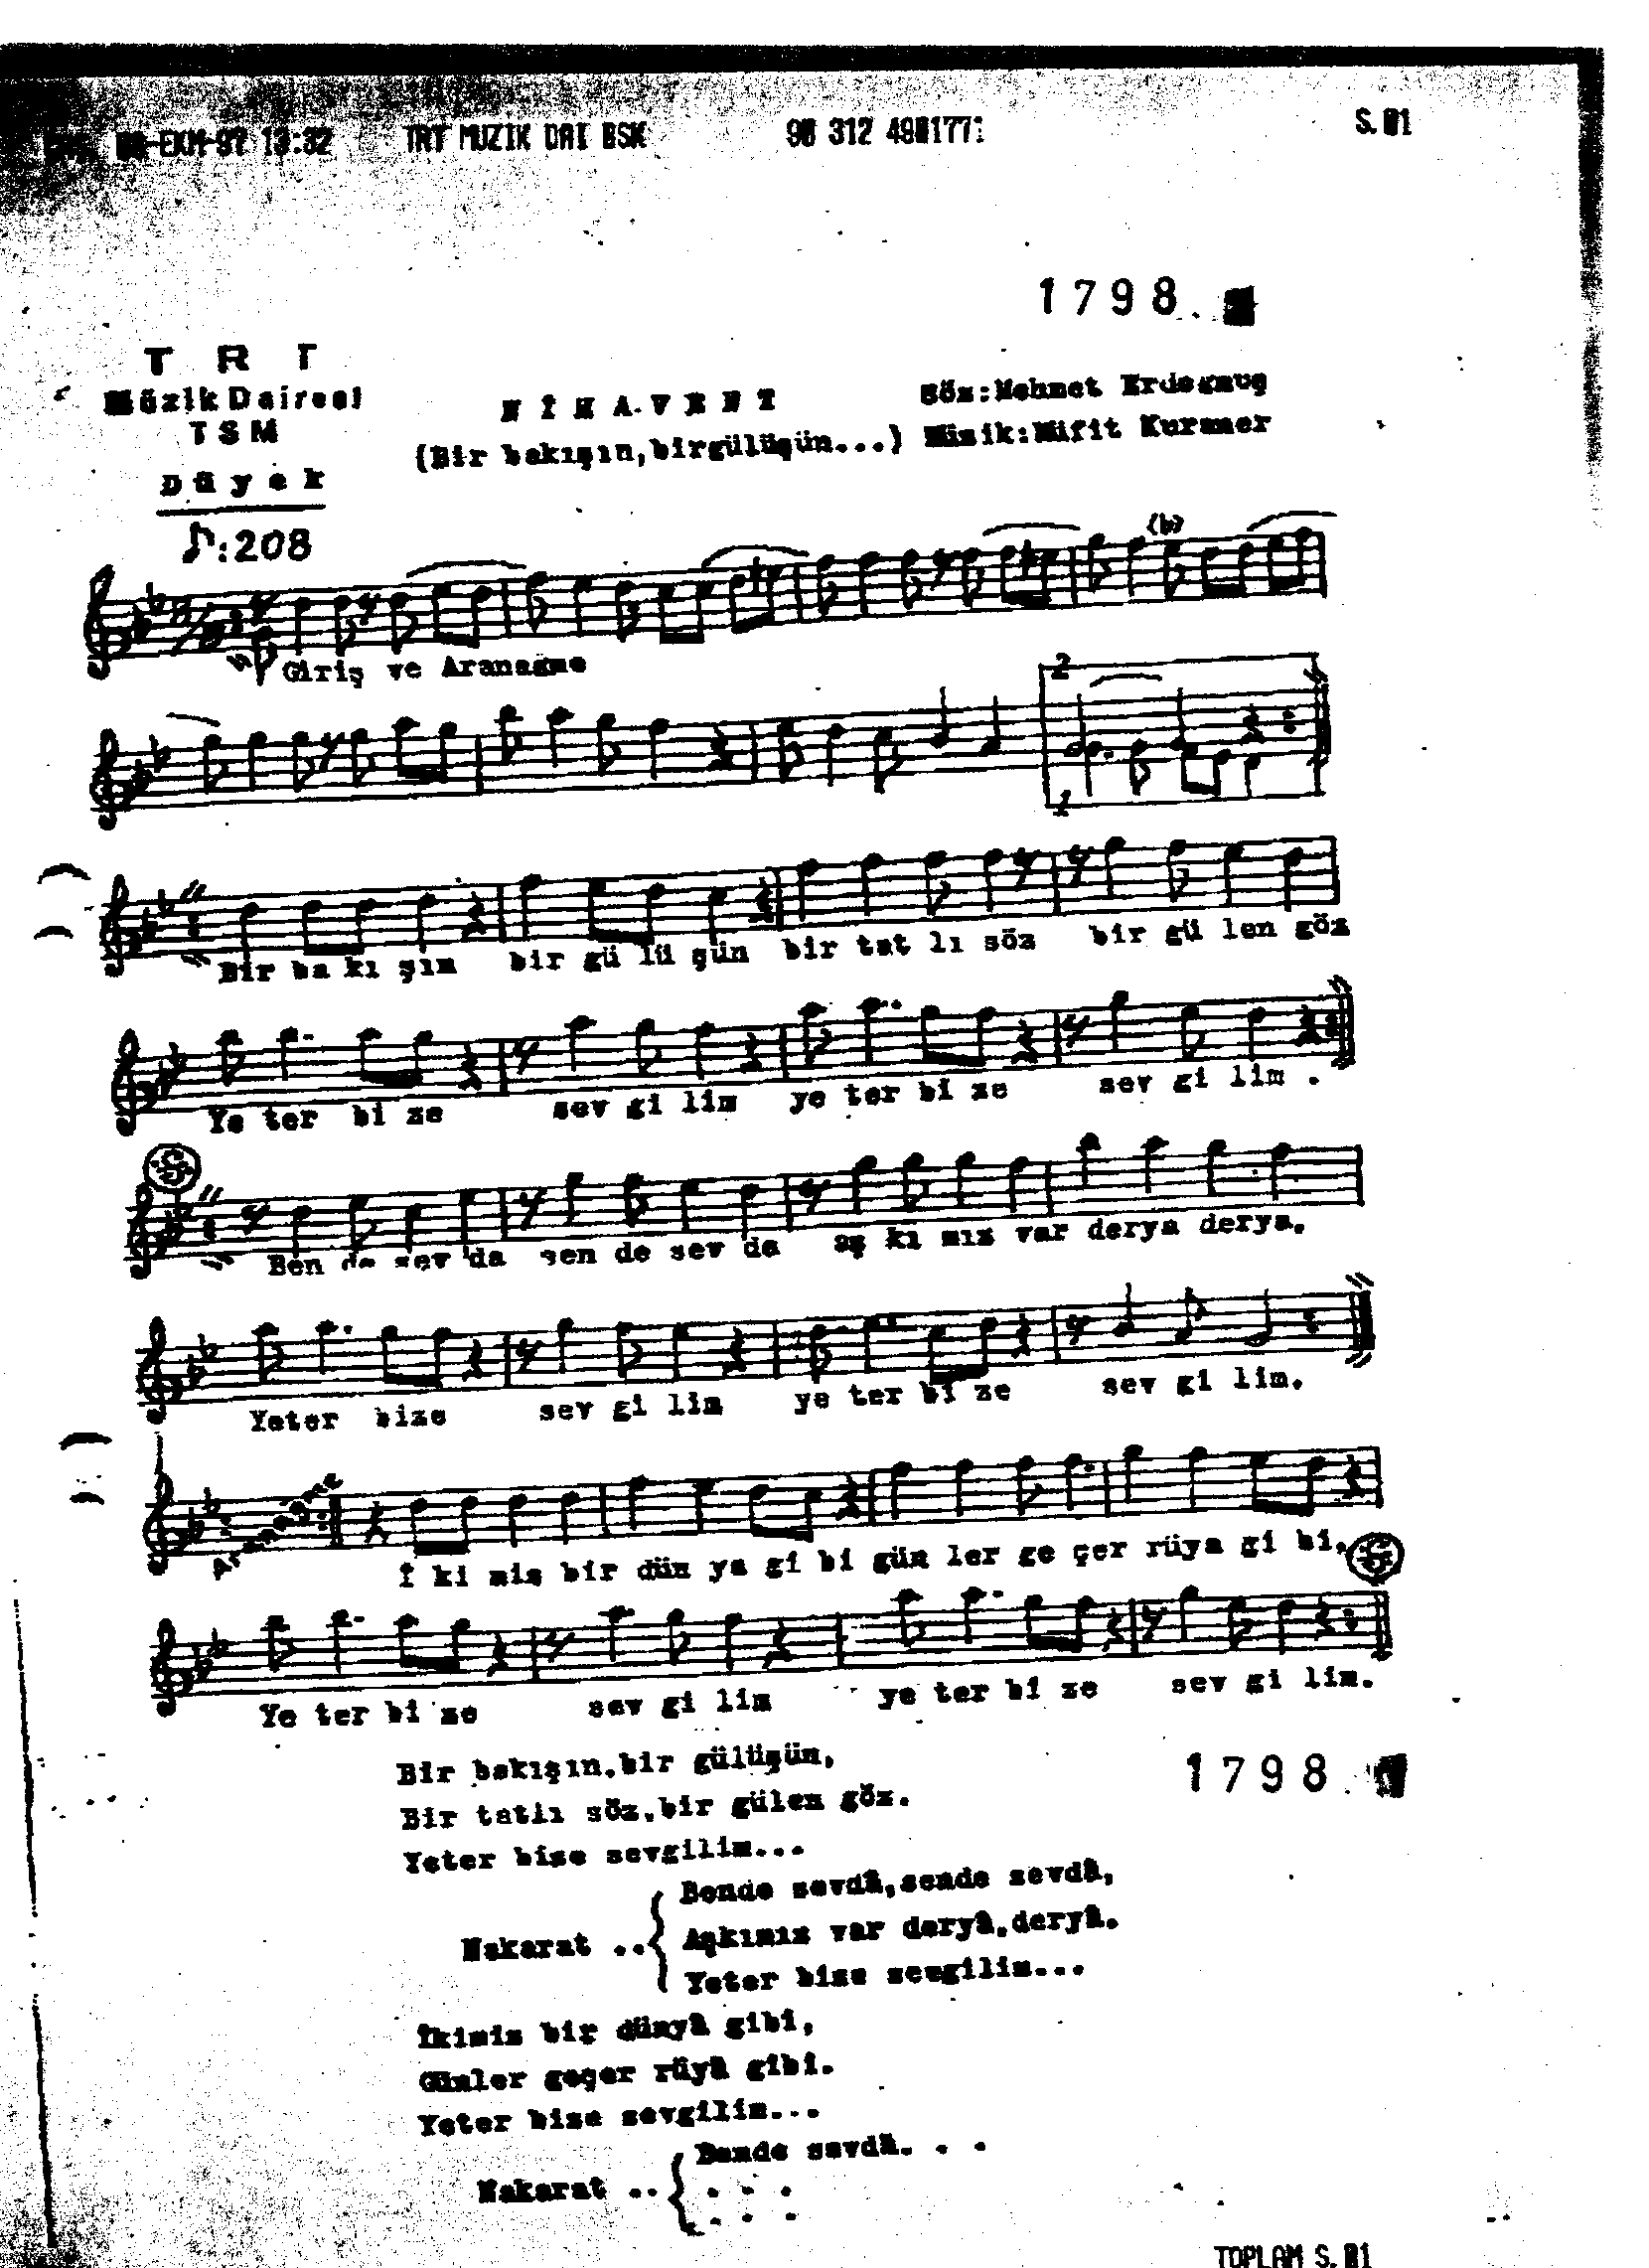 Nihâvend - Şarkı - Müfit Kuraner - Sayfa 1